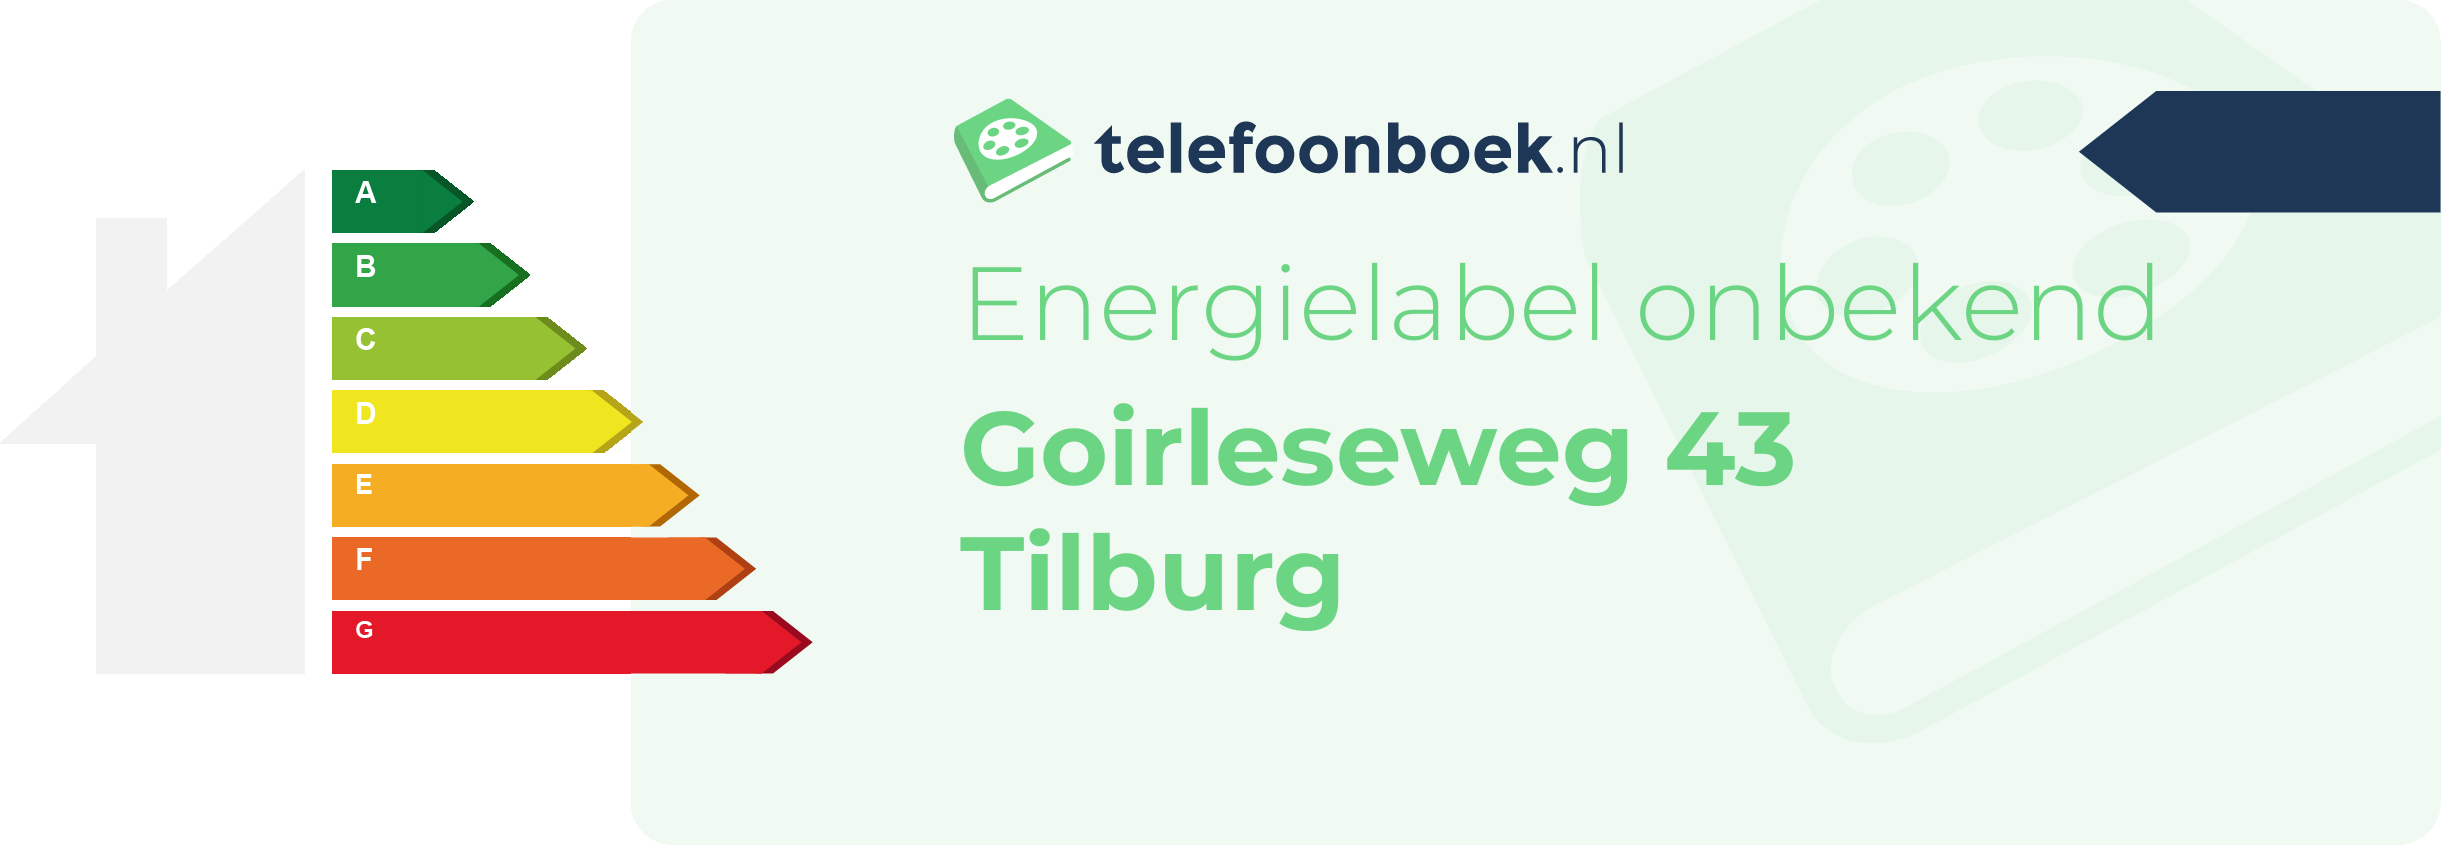 Energielabel Goirleseweg 43 Tilburg